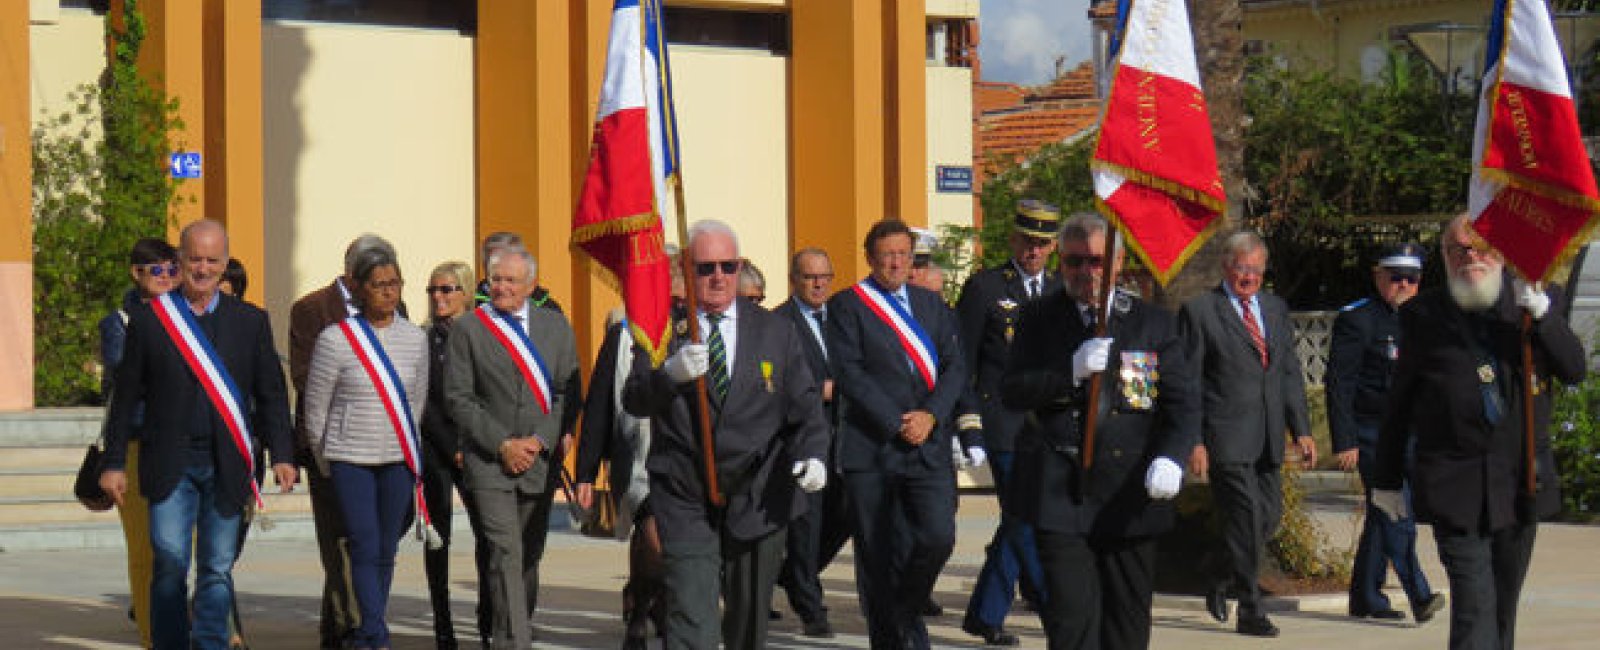 Les cérémonies patriotiques en Méditerranée Porte des Maures